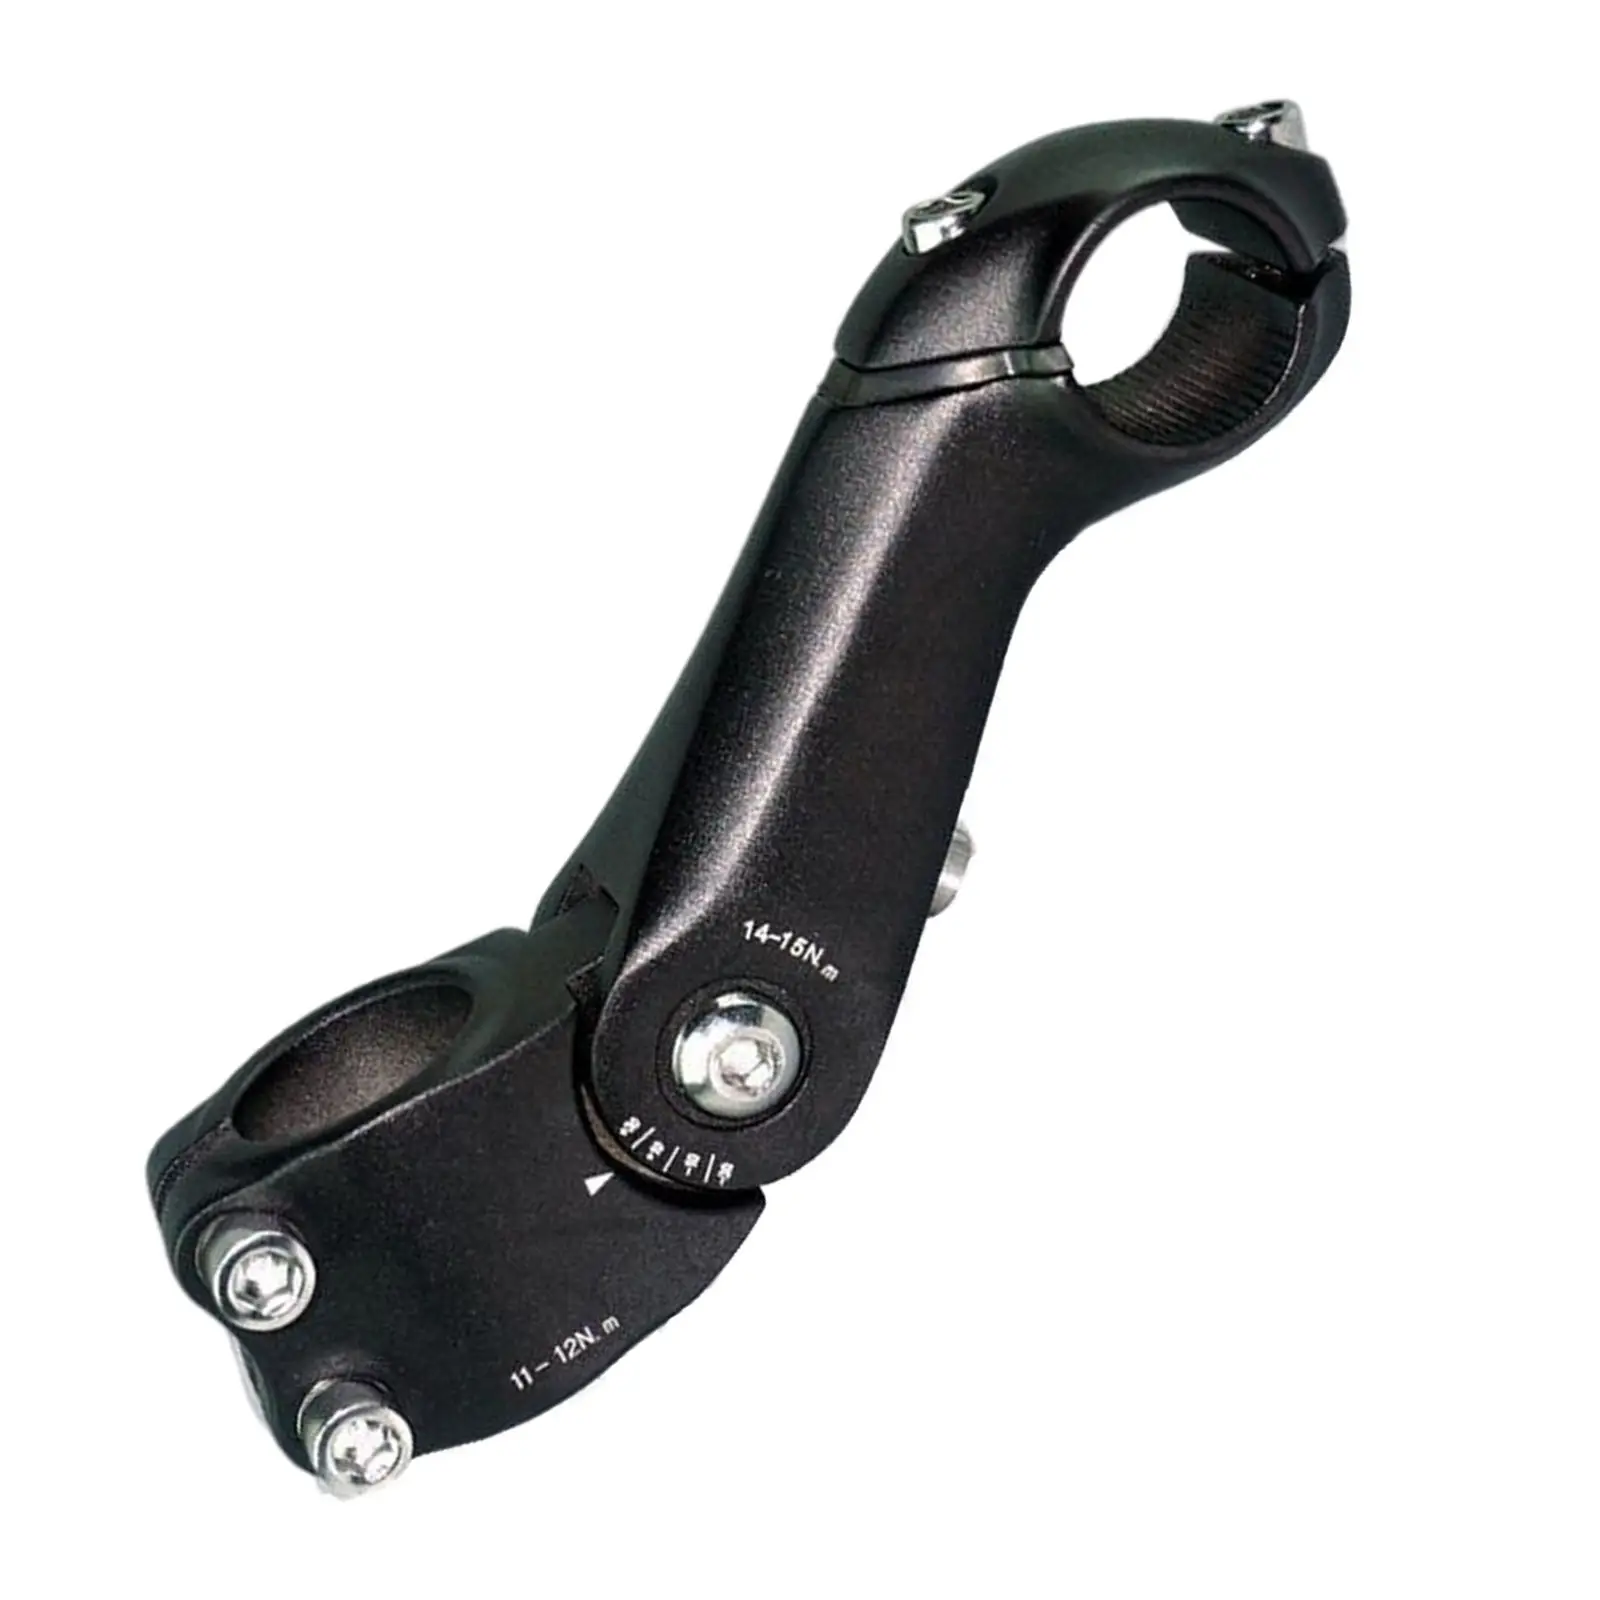 25.4mm Adjustable Stem MTB Adjustable Bike Stem for 25.4mm(1``) Handlebars, Suitable for Most of Mountain Bike, Road Bike